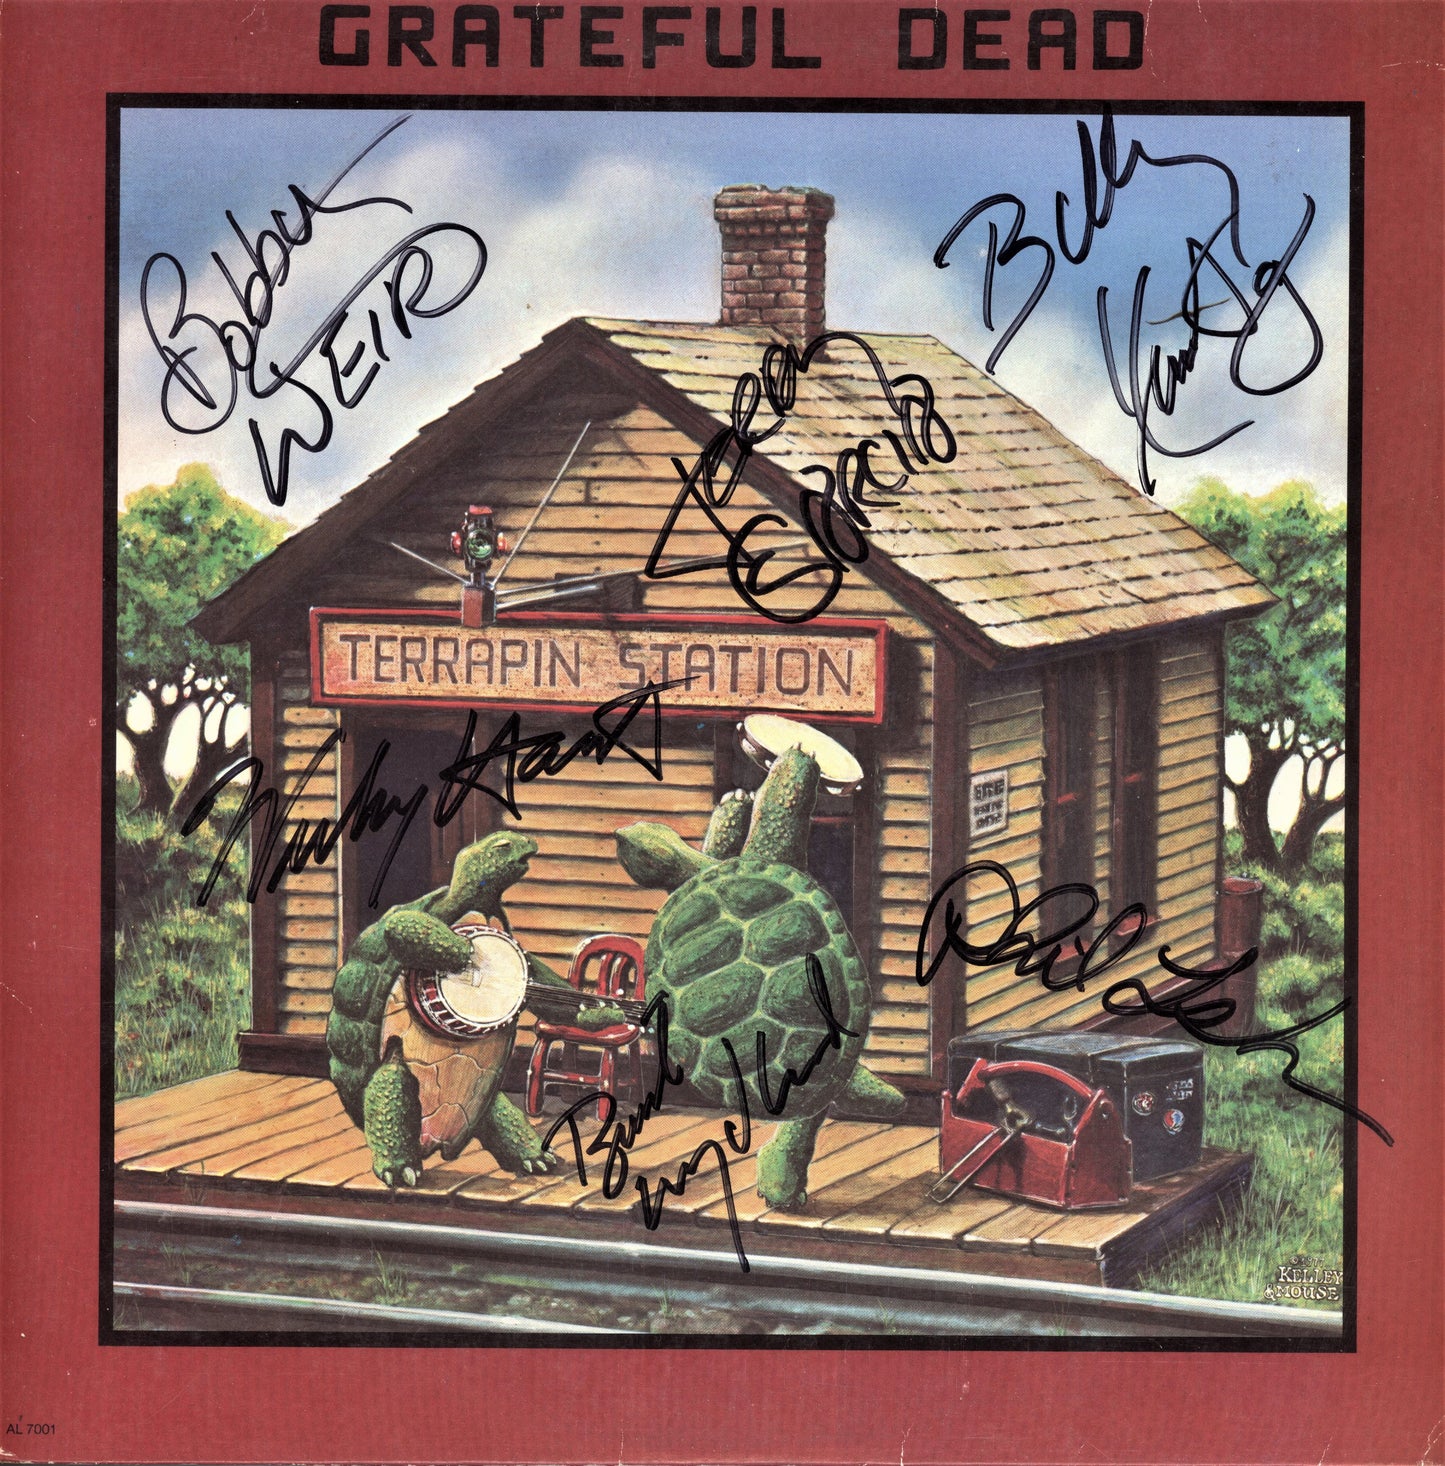 Grateful Dead Autographed Lp "Terrapin Station" - Zion Graphic Collectibles